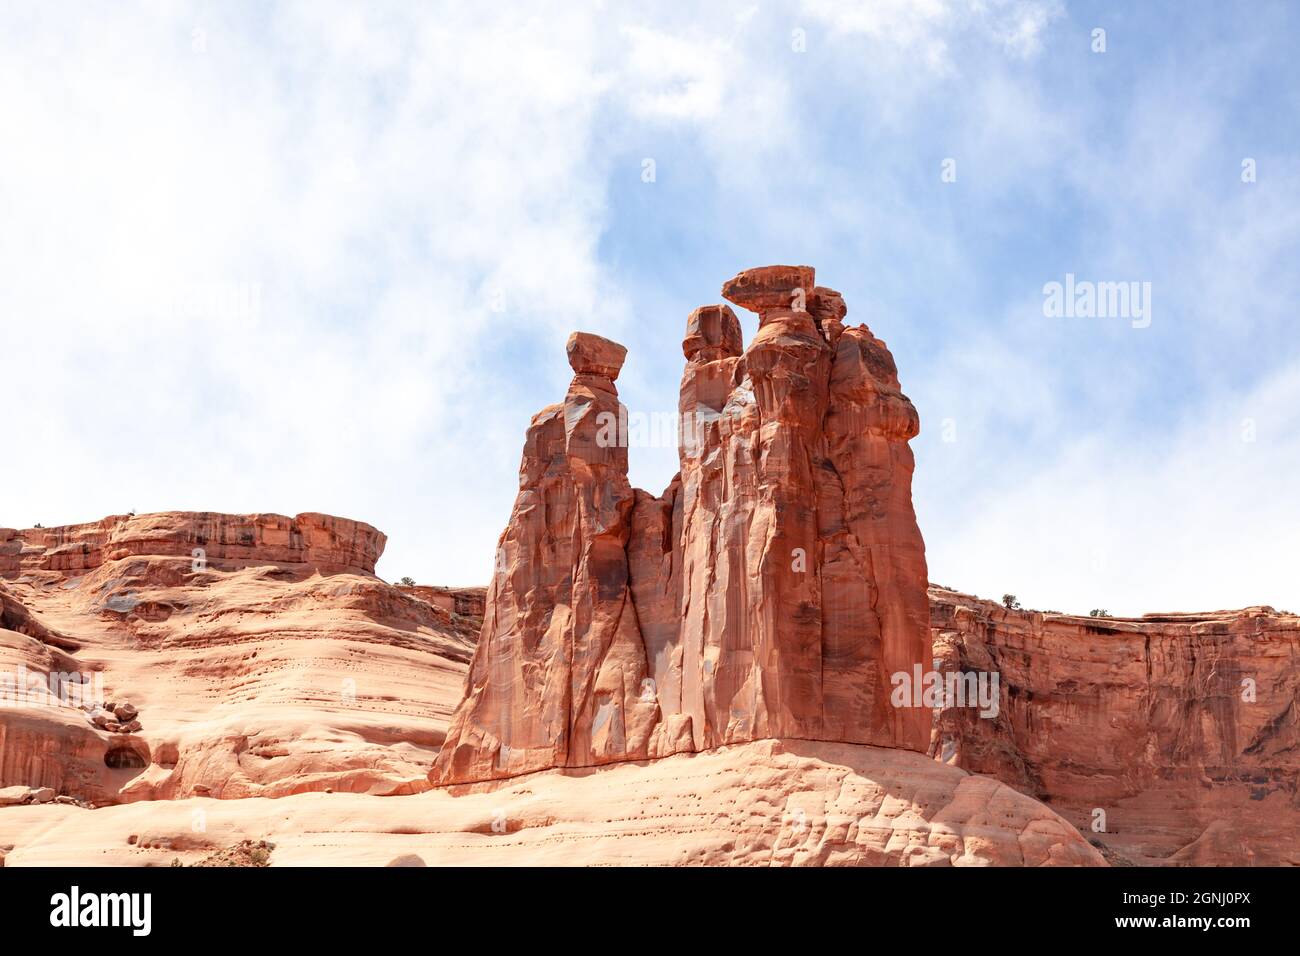 Les trois gossips formation arches parc national Desert rock vista moab utah usa Banque D'Images